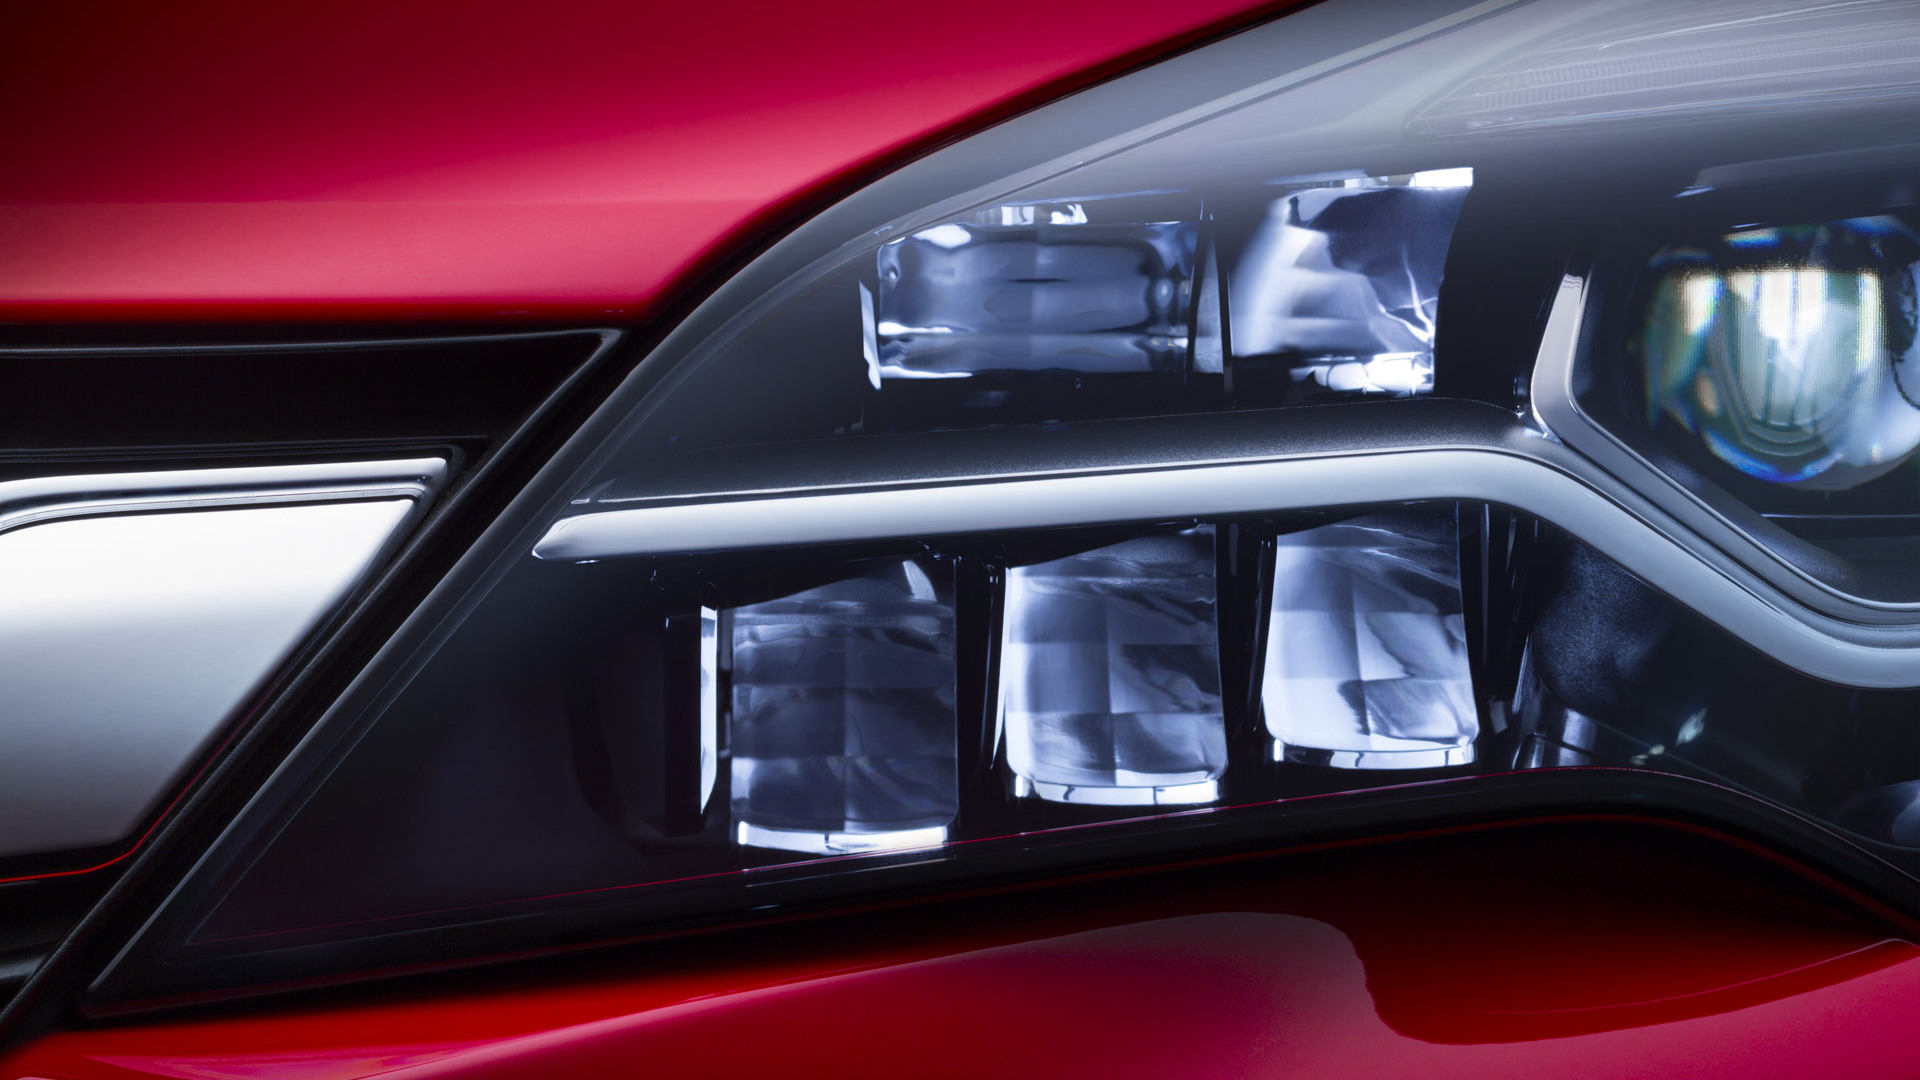 2016 Opel Astra’s Matrix LED headlights